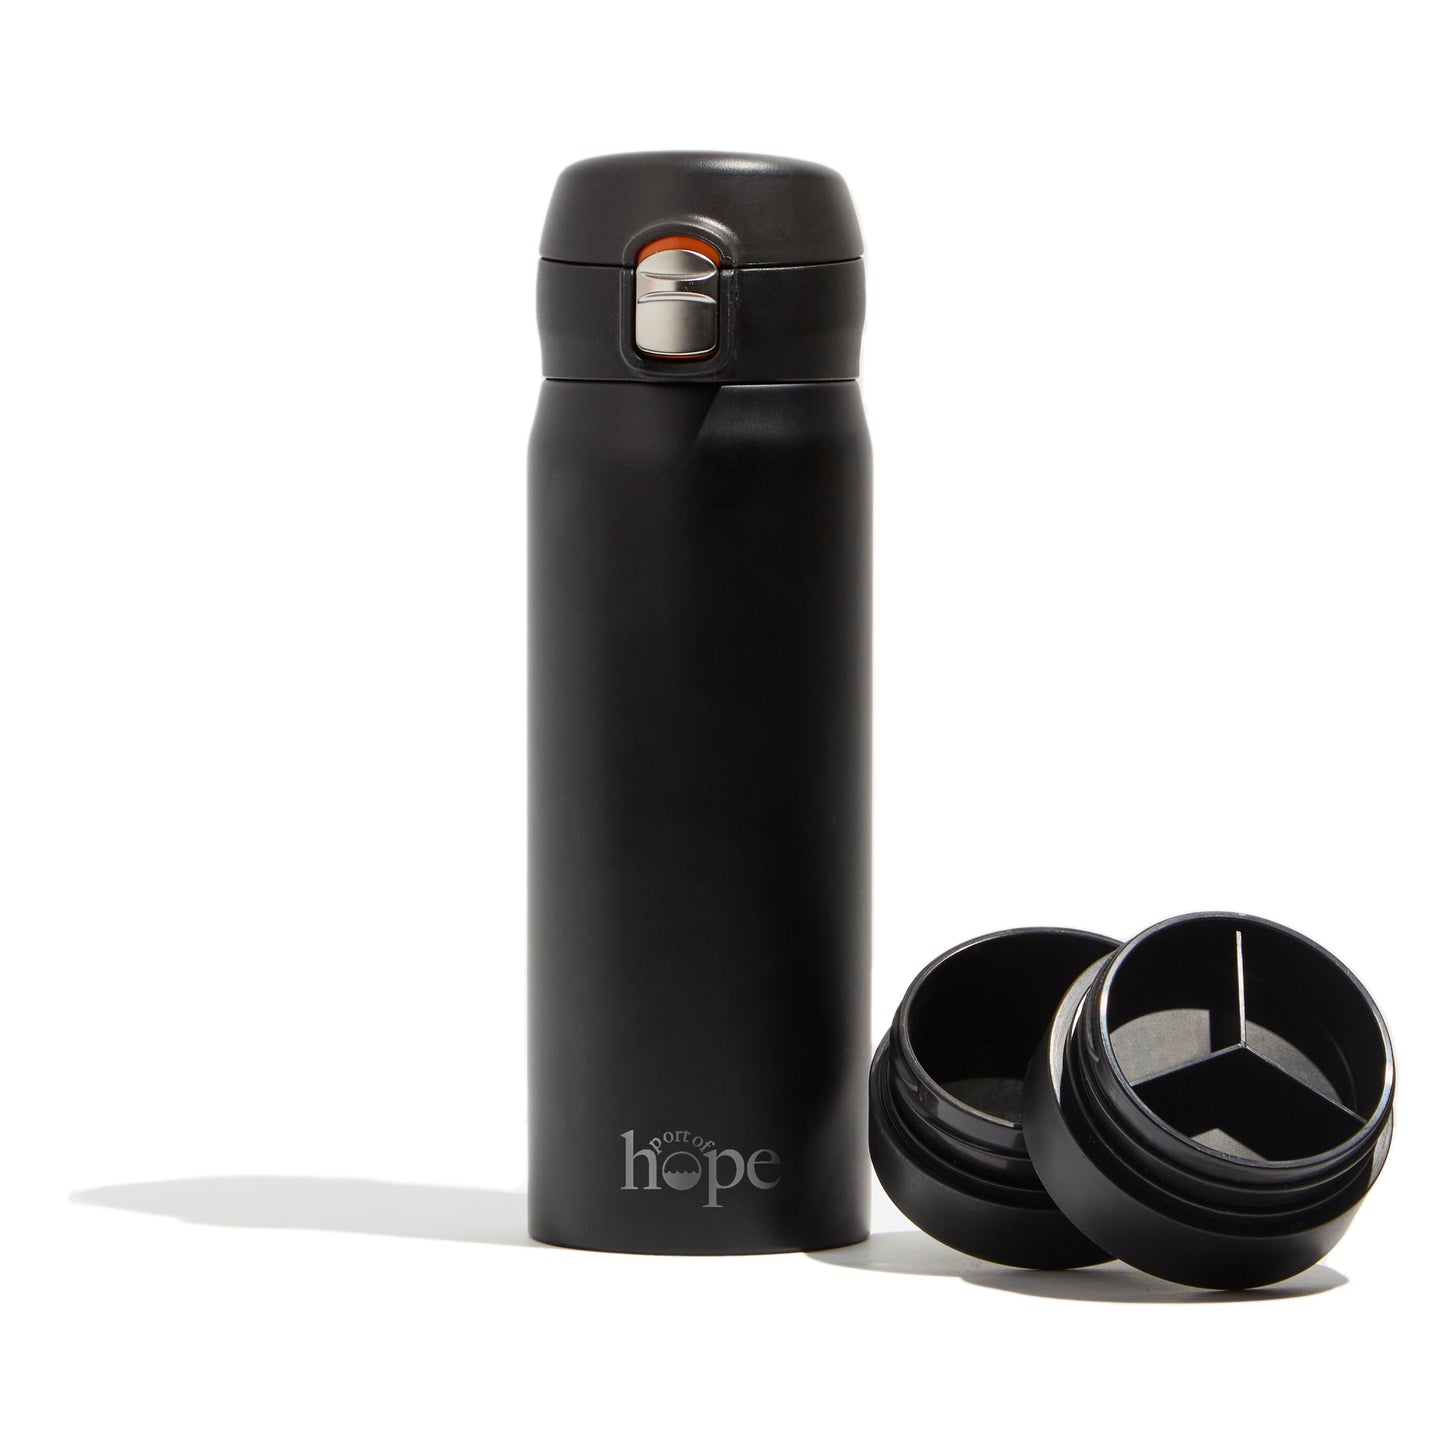 Hope Bottle - Charcoal Black